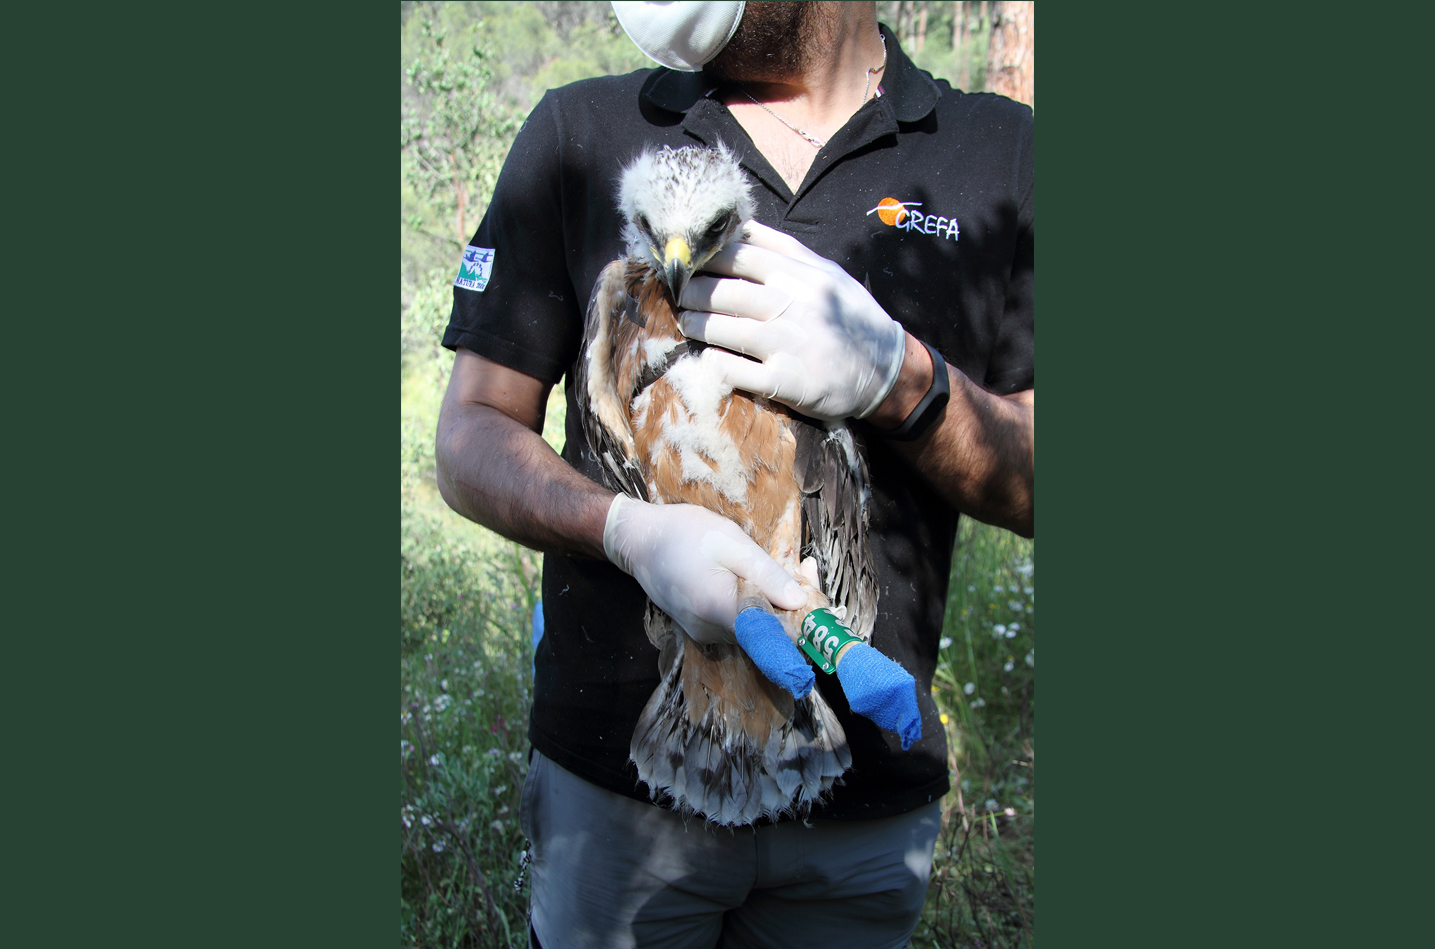 Pollo de águila de Bonelli nacido en 2020 en la Comunidad de Madrid, capturado momentáneamente para colocarle un emisor GPS. Imagen: Grefa